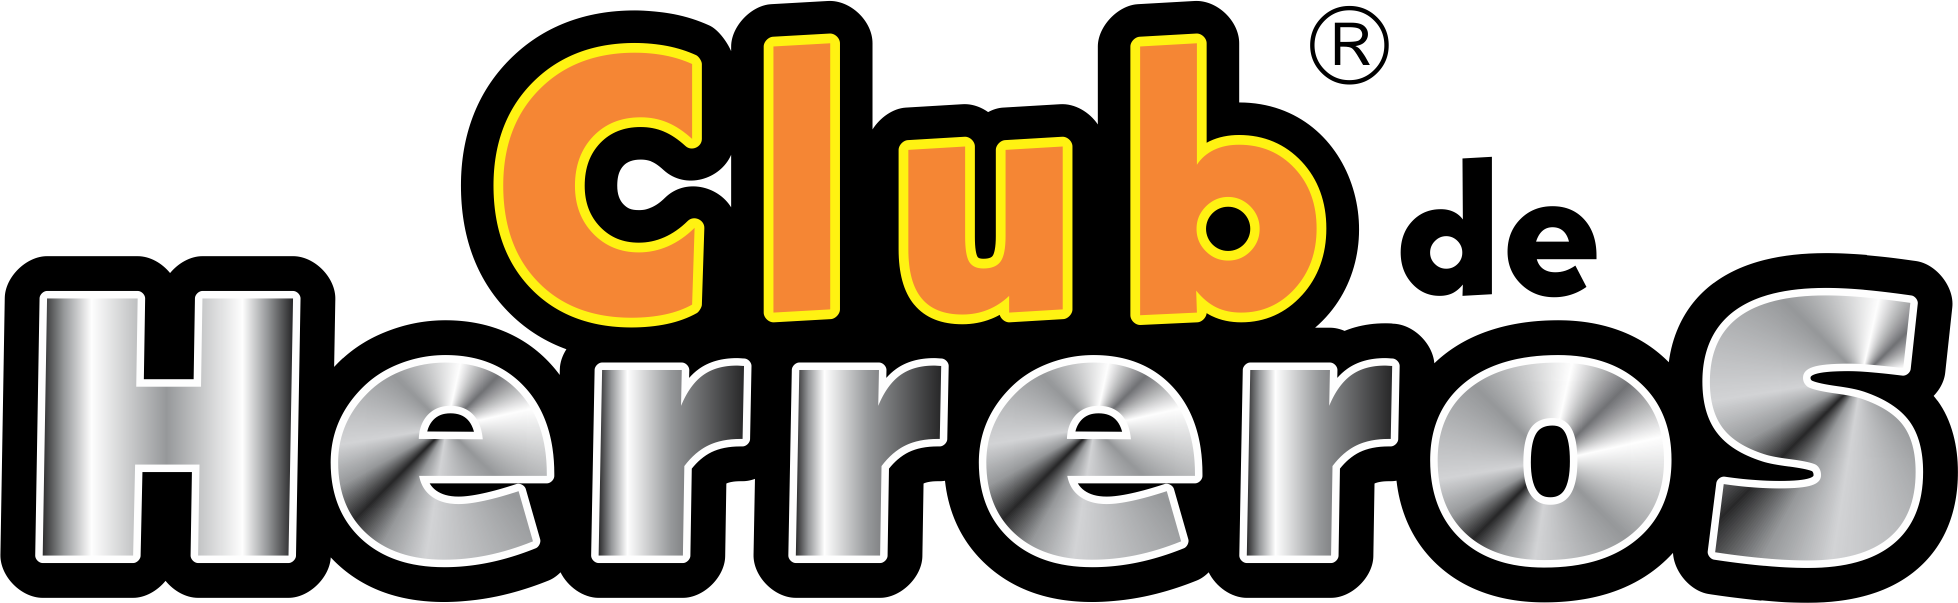 Club de Herreros